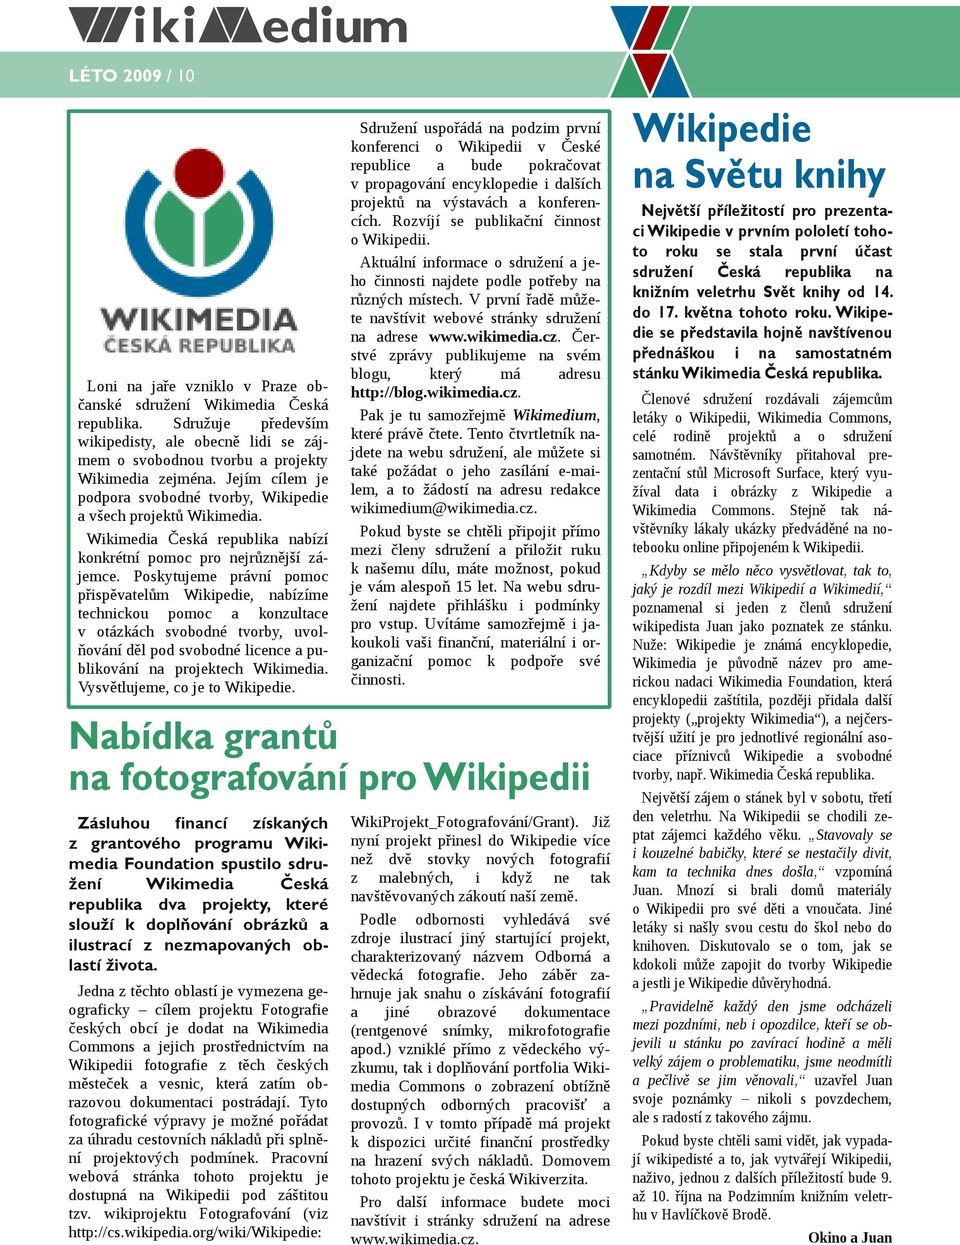 Poskytujeme právní pomoc přispěvatelům Wikipedie, nabízíme technickou pomoc a konzultace v otázkách svobodné tvorby, uvolňování děl pod svobodné licence a publikování na projektech Wikimedia.